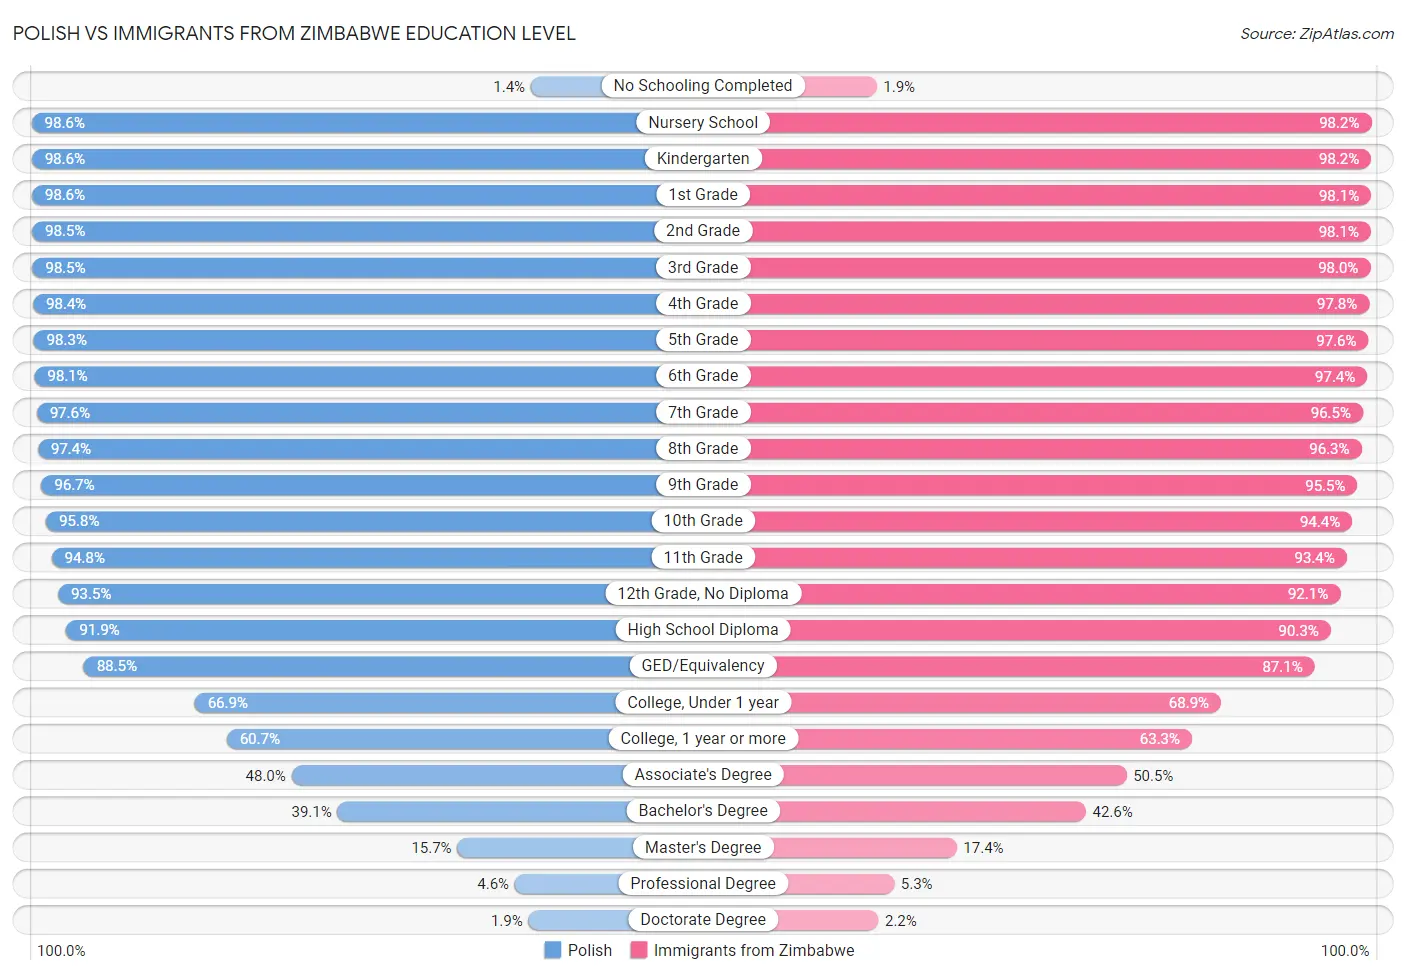 Polish vs Immigrants from Zimbabwe Education Level